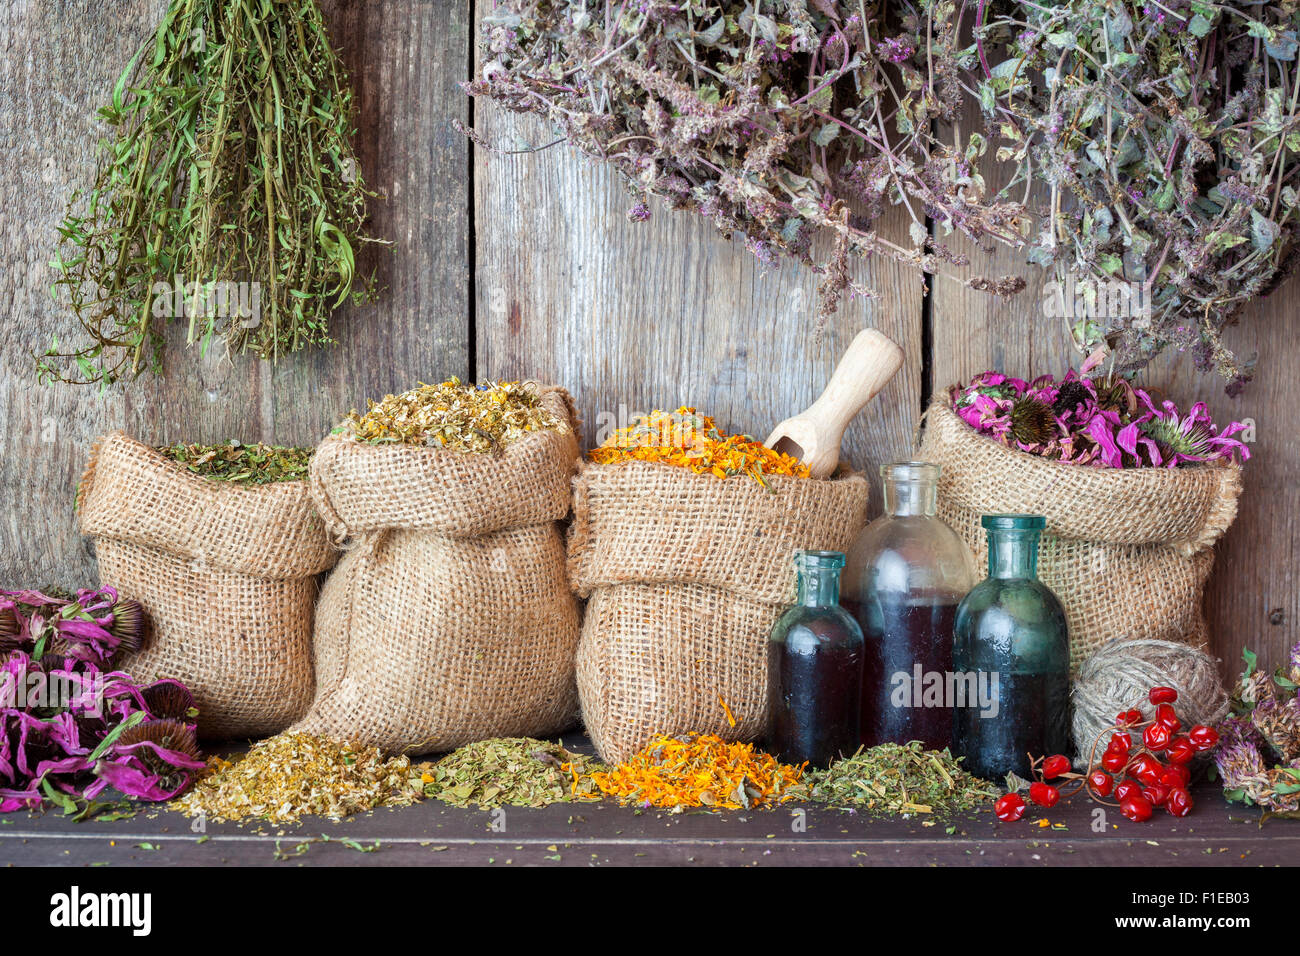 Heilkräuter in Hessischen Taschen und Flaschen von ätherischen Ölen in der Nähe von rustikalen Holzwand, Kräutermedizin. Stockfoto